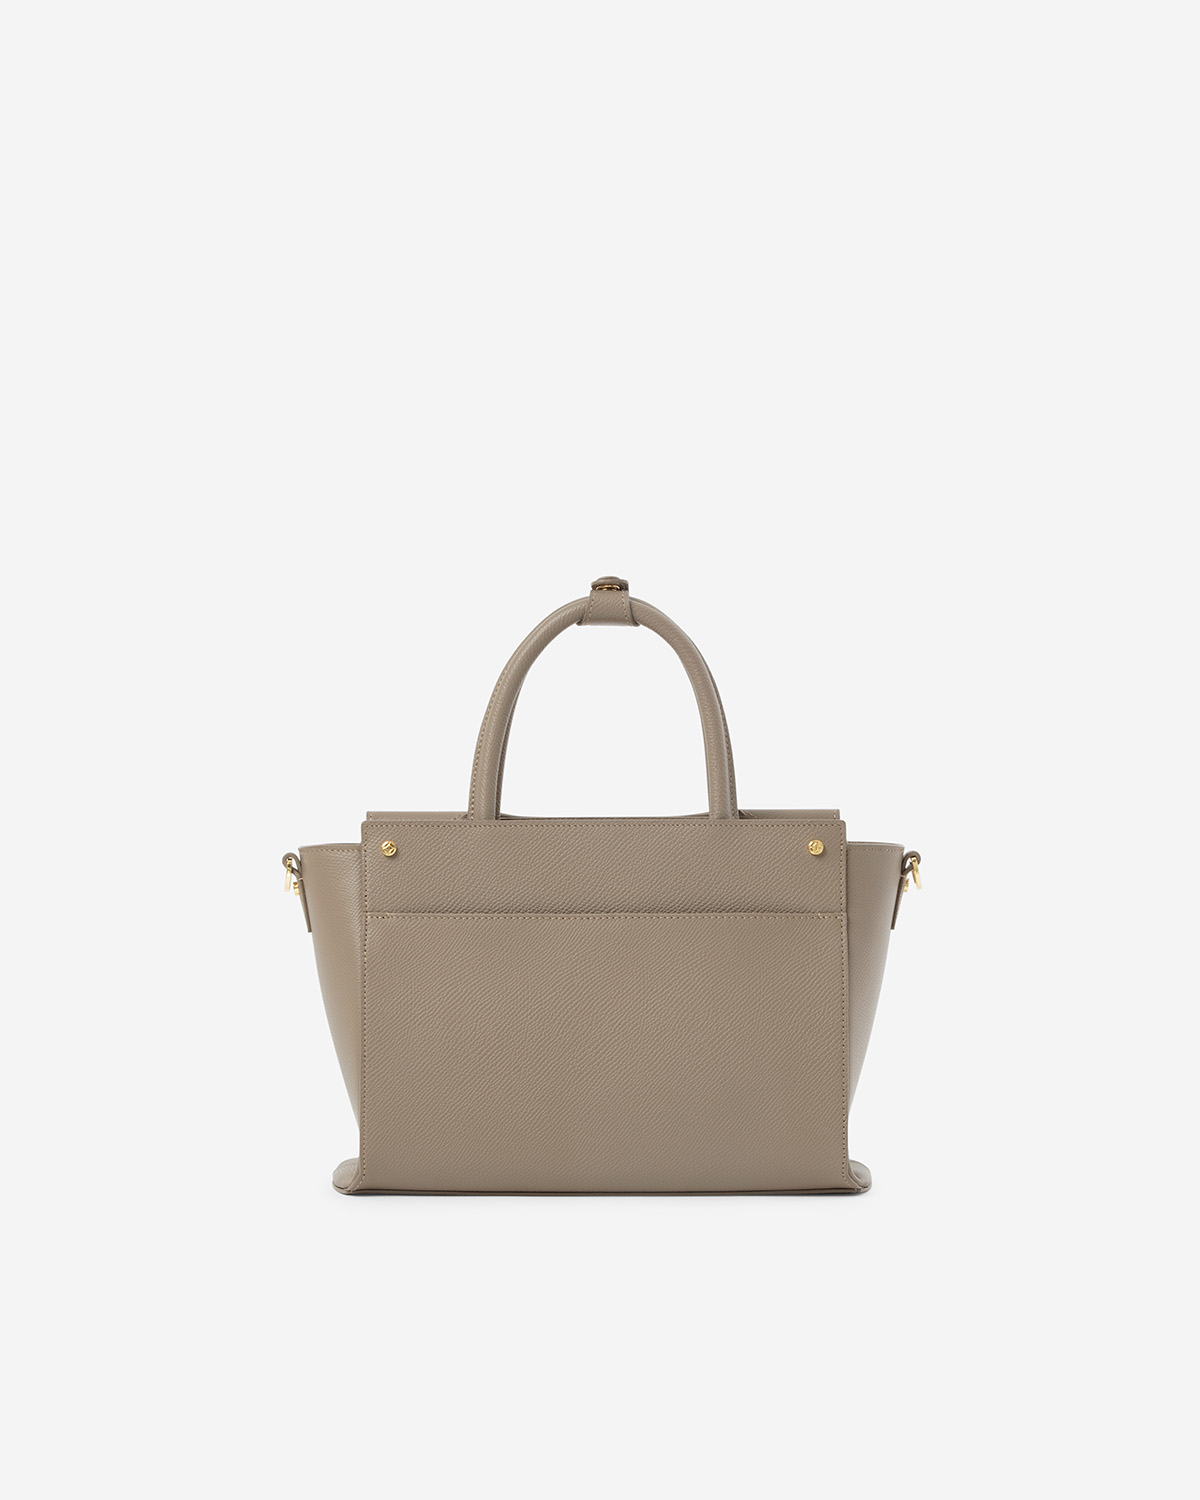 กระเป๋าถือหนังแท้ VERA Heidi Leather Handbag, ไซส์ 28 สี Taupe